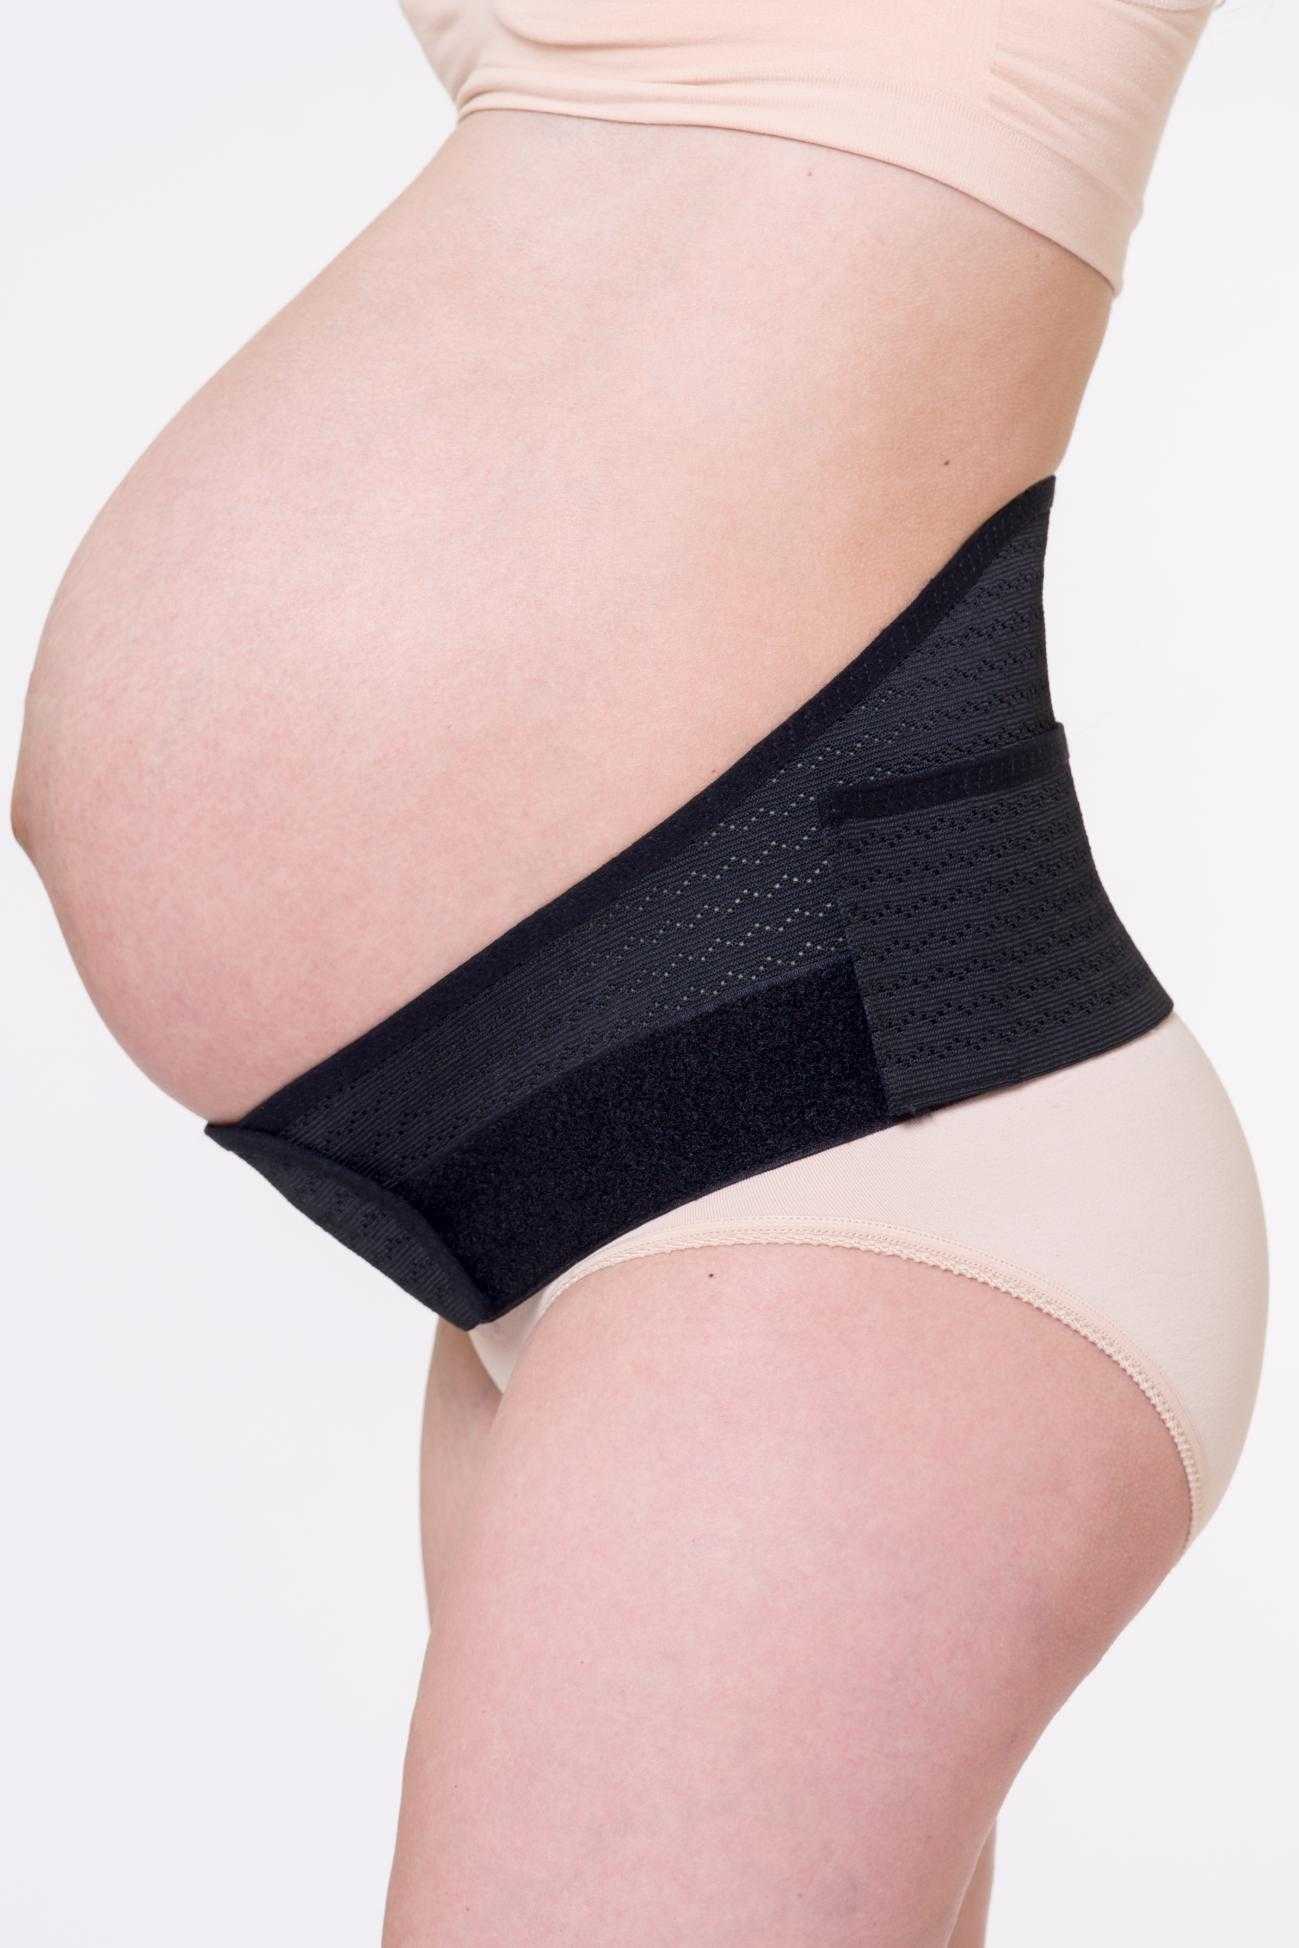 Бандаж для беременных – какой лучше выбрать: какие бывают пояса и как правильно его одевать и носить